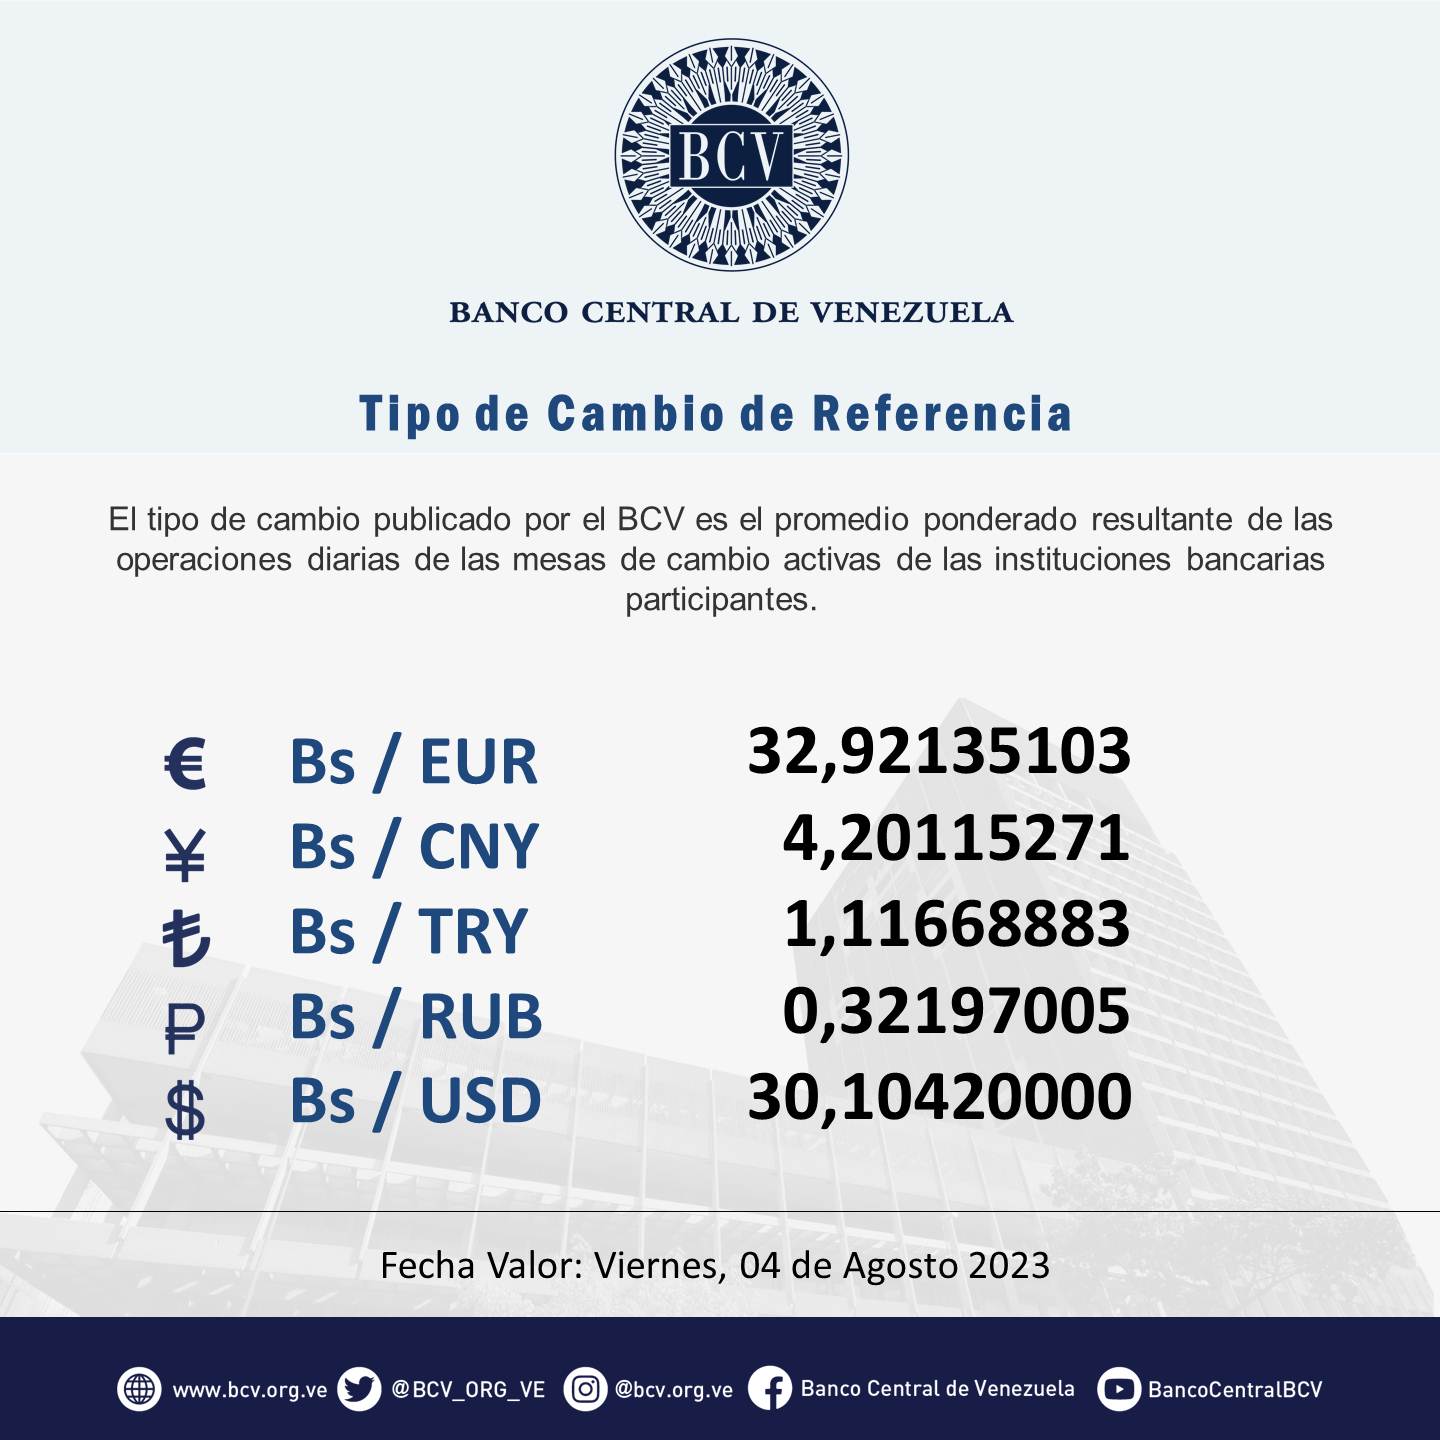 precio del dólar oficial pasó los 30 bolívares